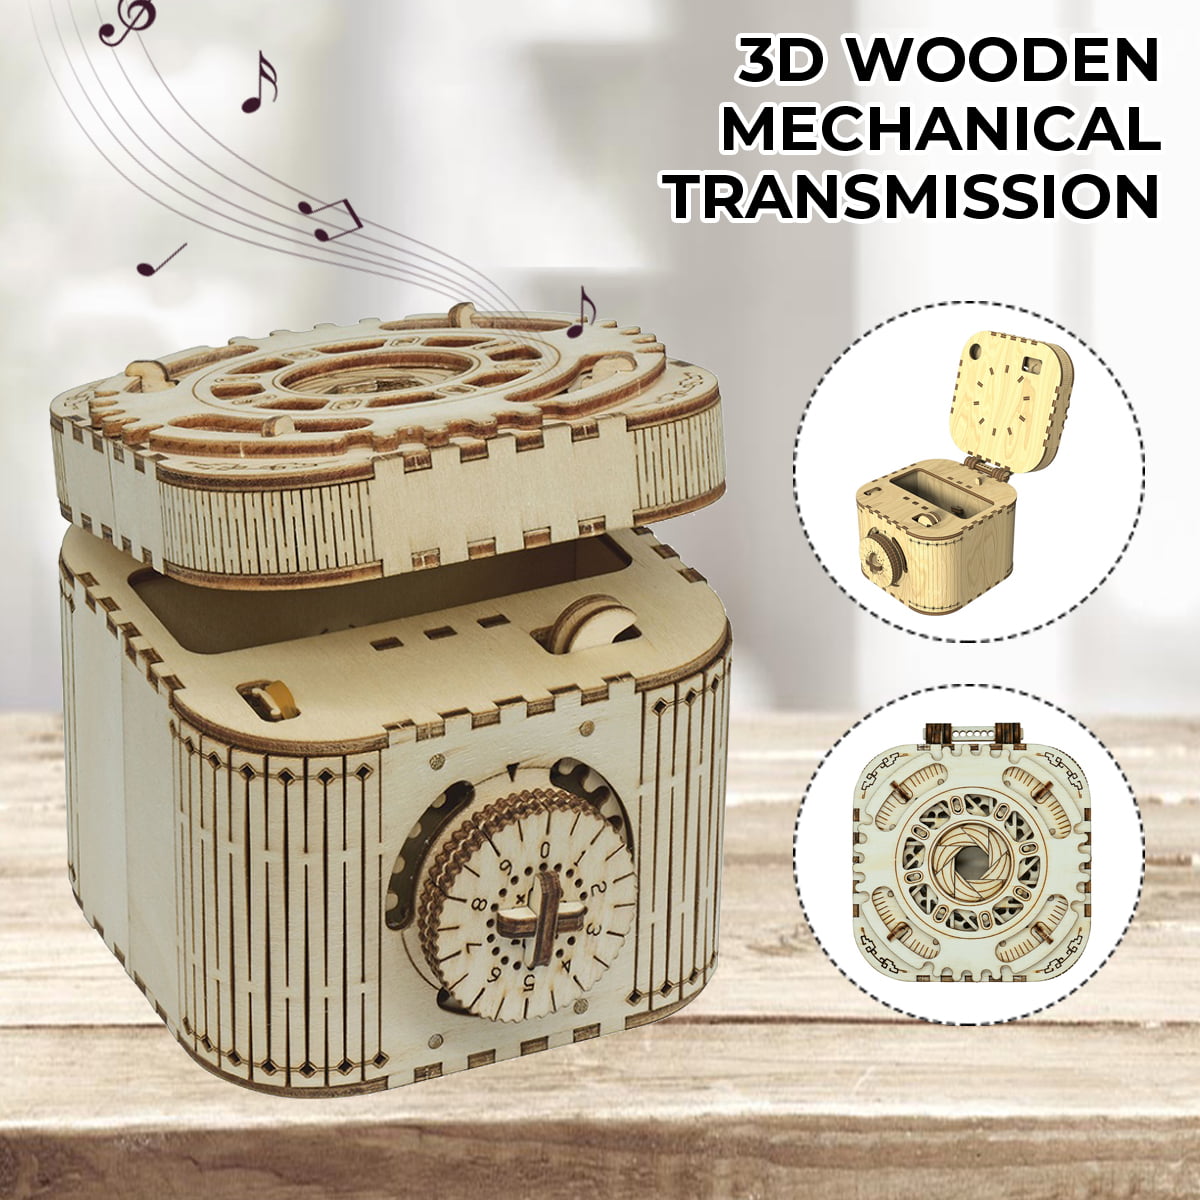 Details about   3D Wooden Jigsaw Puzzle Box Laser Cut Wood Adult Brain Teaser Model Kits 123pcs 